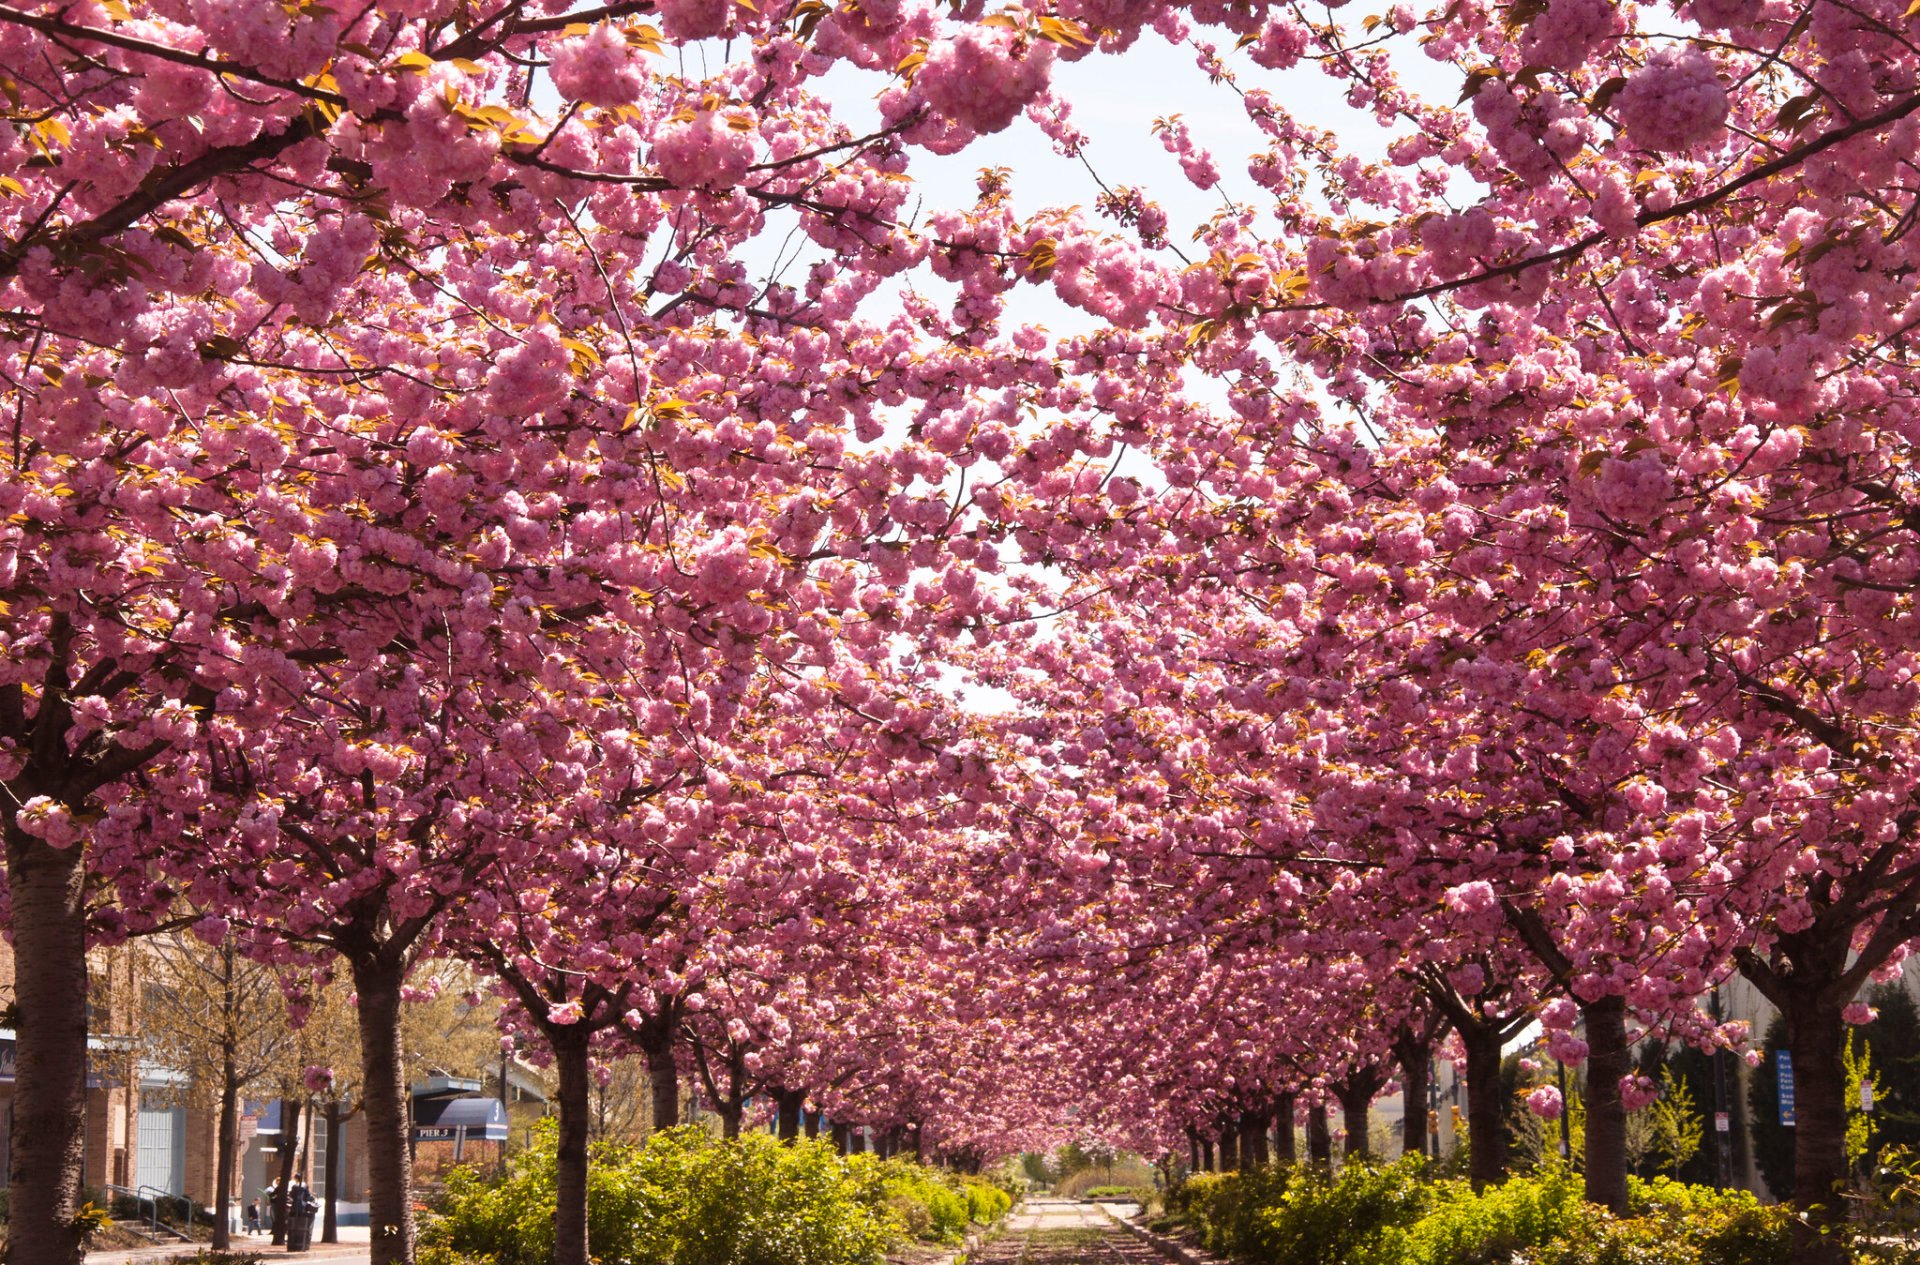 https://images.rove.me/w_1920,q_85/dzomam98fjkcosb3tdza/philadelphia-cherry-blossoms.jpg